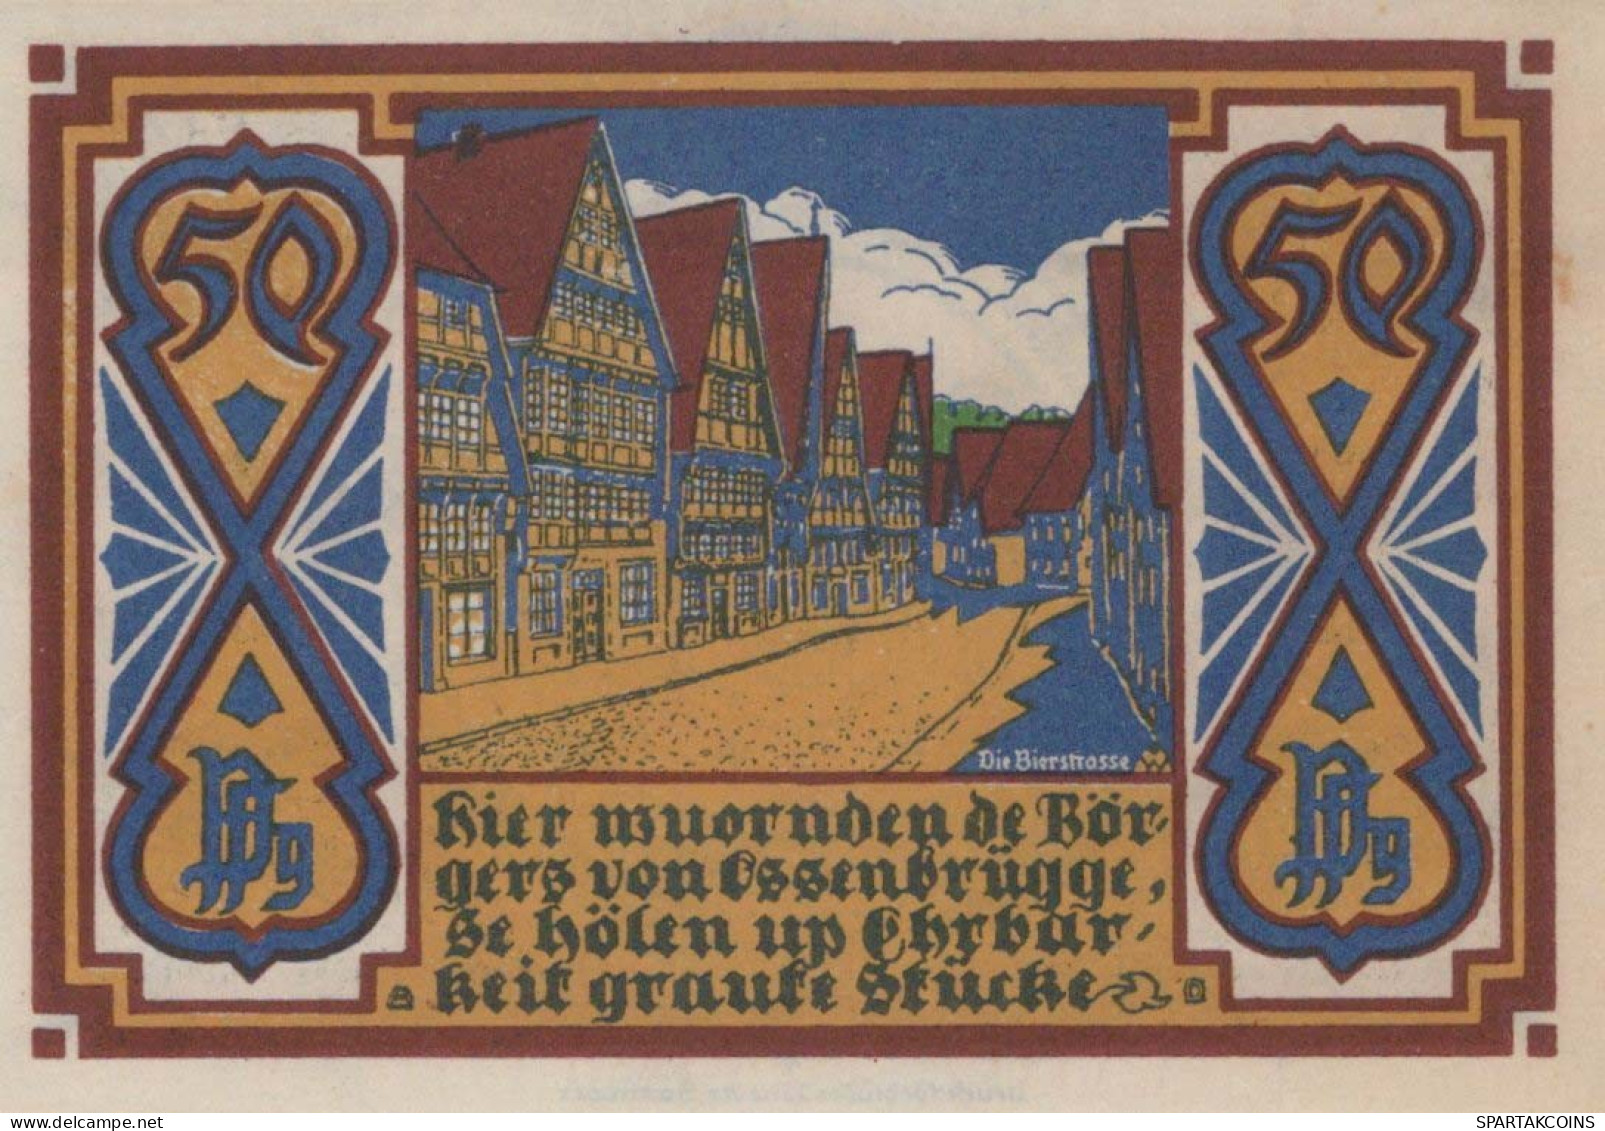 50 PFENNIG 1921 Stadt OSNABRÜCK Hanover DEUTSCHLAND Notgeld Banknote #PF624 - [11] Local Banknote Issues